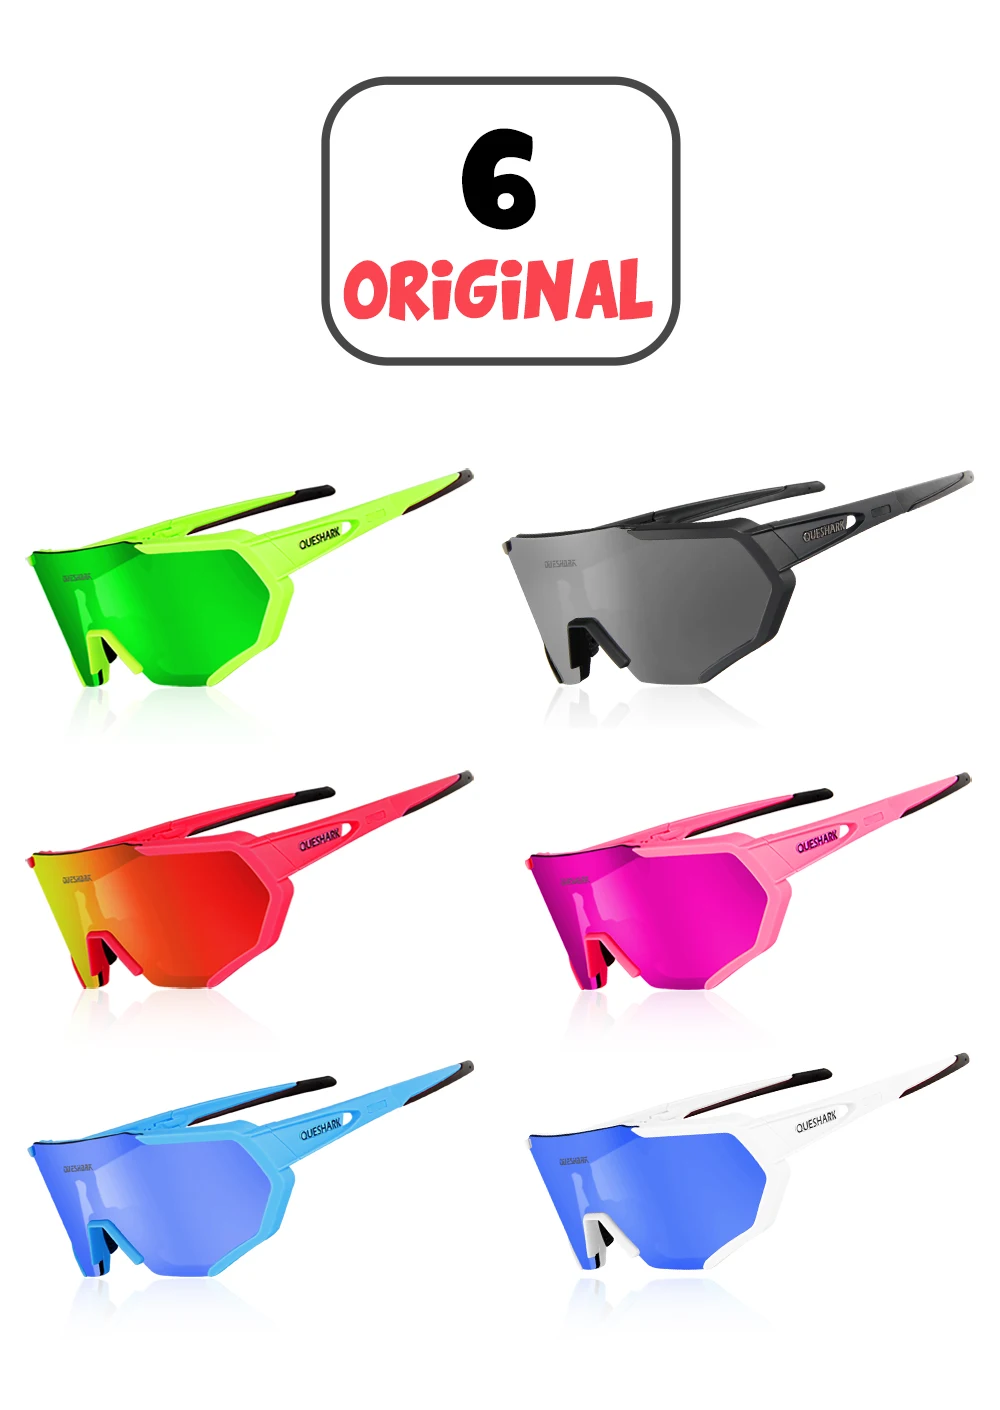 Поляризованные велосипедные очки Queshark Профессиональный 3 объектива/комплект TR90 рамка HD зеркальные поляризованные солнцезащитные очки для езды на велосипеде, большой Размеры очки, спортивные очки, очки